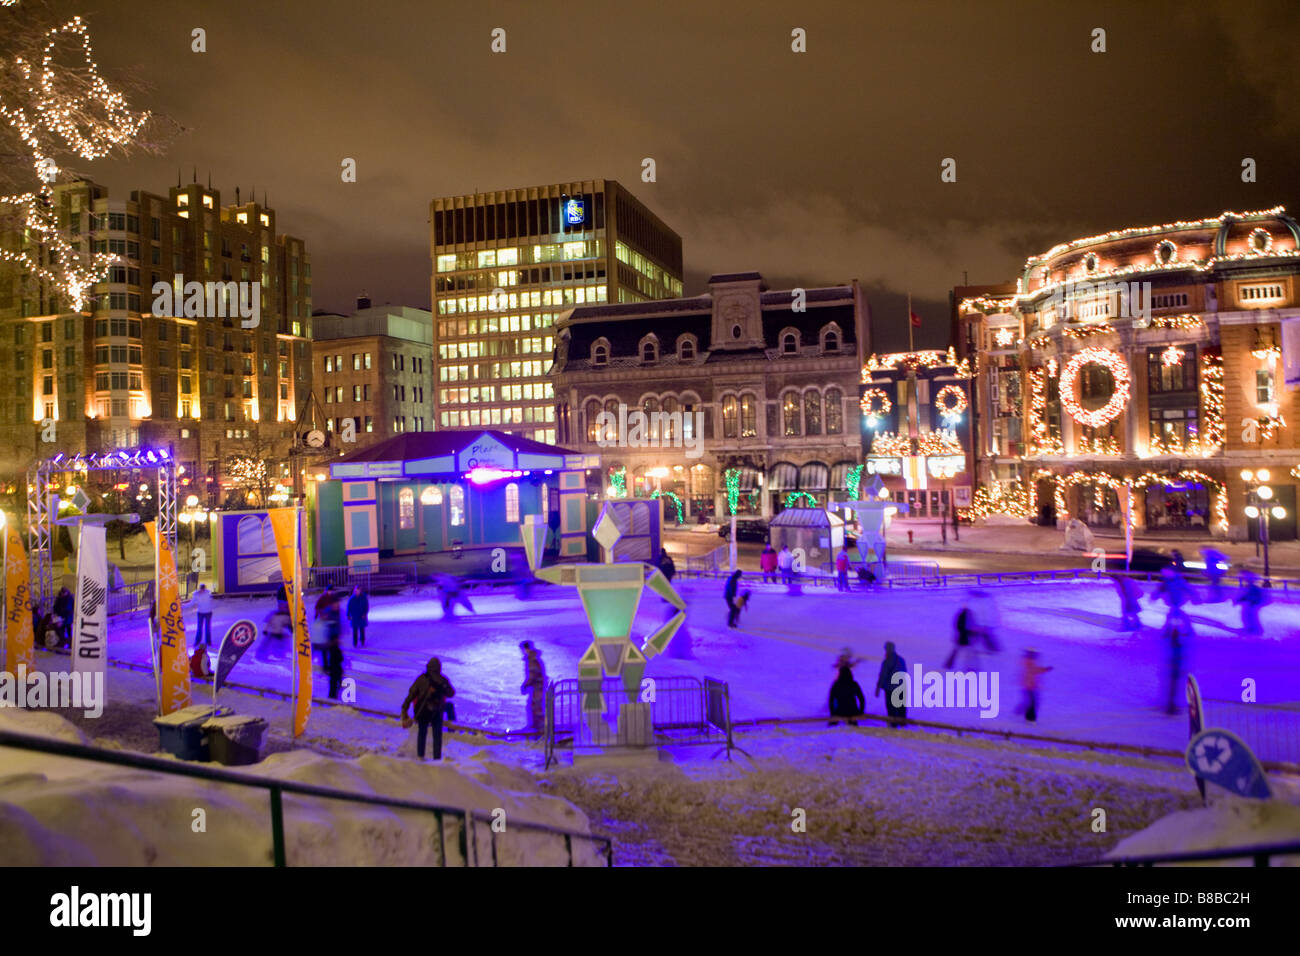 Menschen Eislaufen am Place Hydro Quebec Frontmann Capitole Theater Winter Karneval Quebec City, Kanada Stockfoto